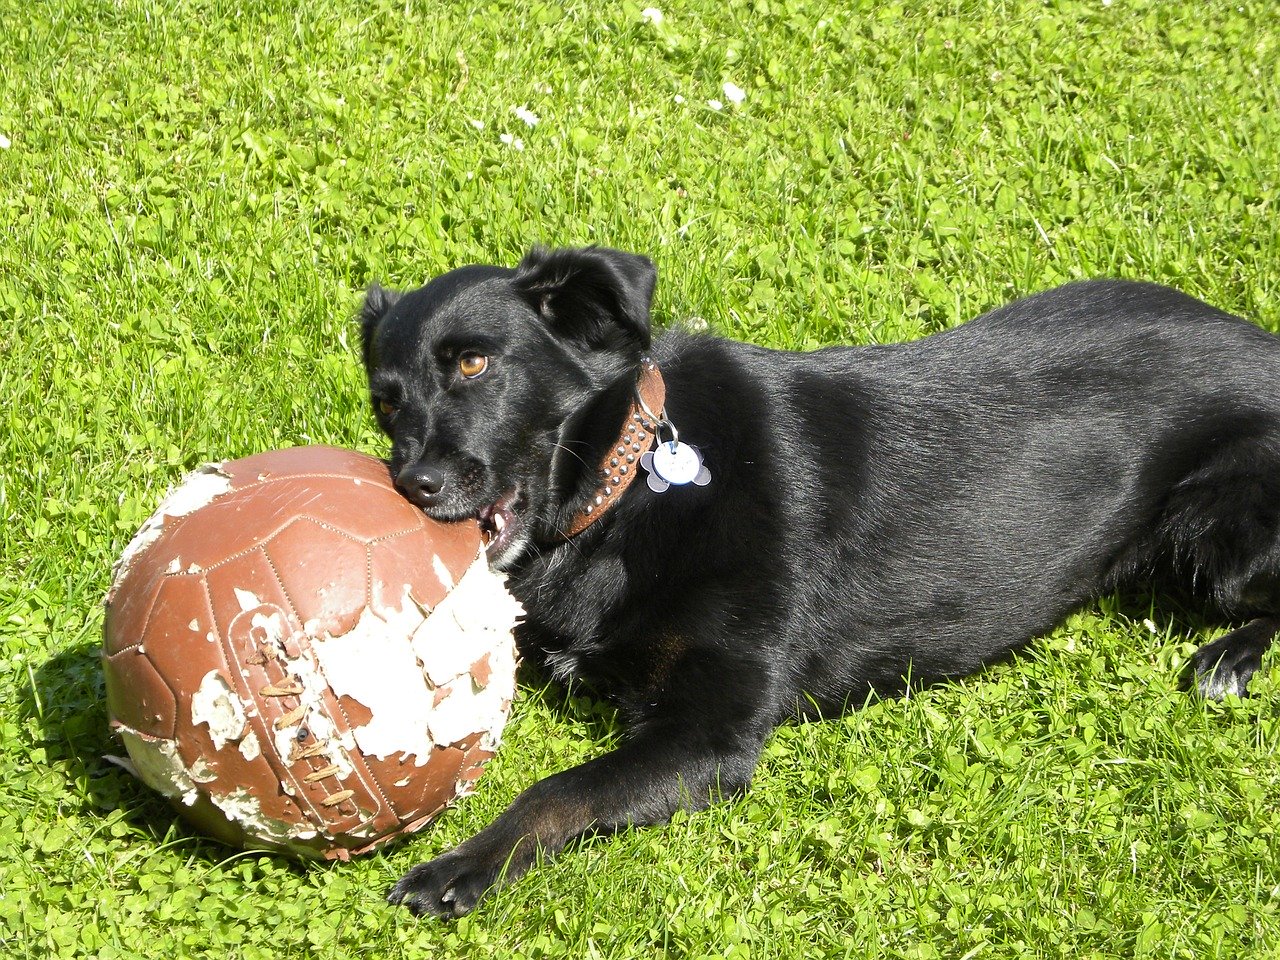 A Labrador chewing a soccer ball